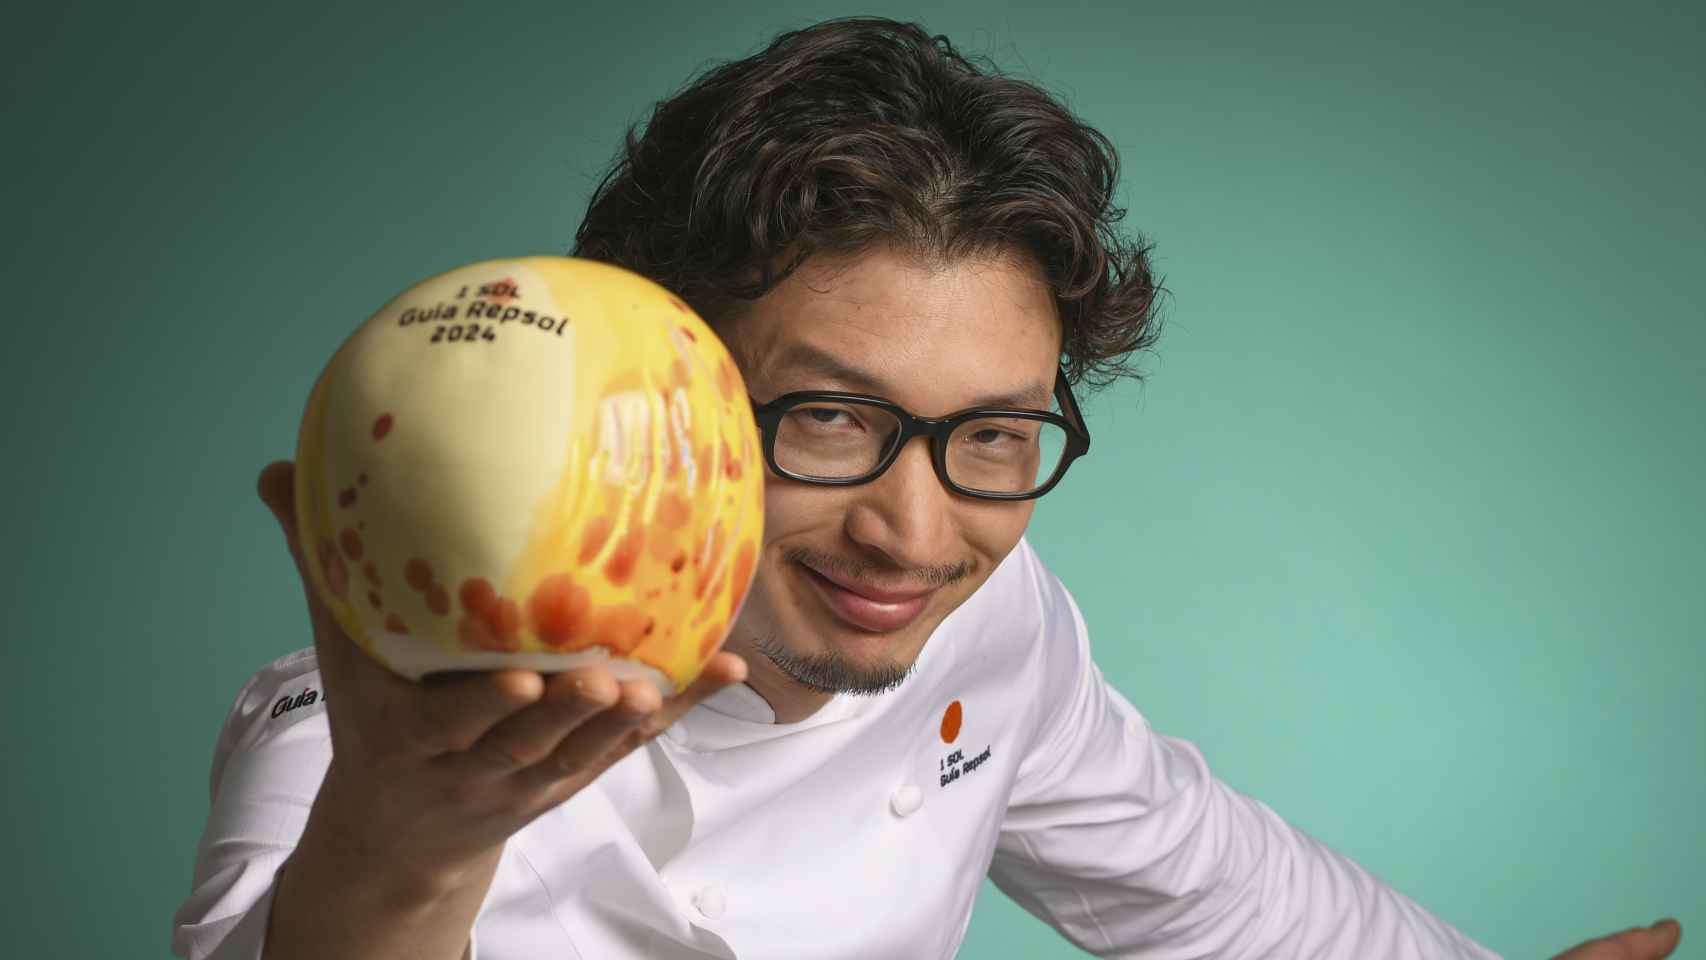 El chef Yoshikazu Suto con un Sol de la guía Repsol